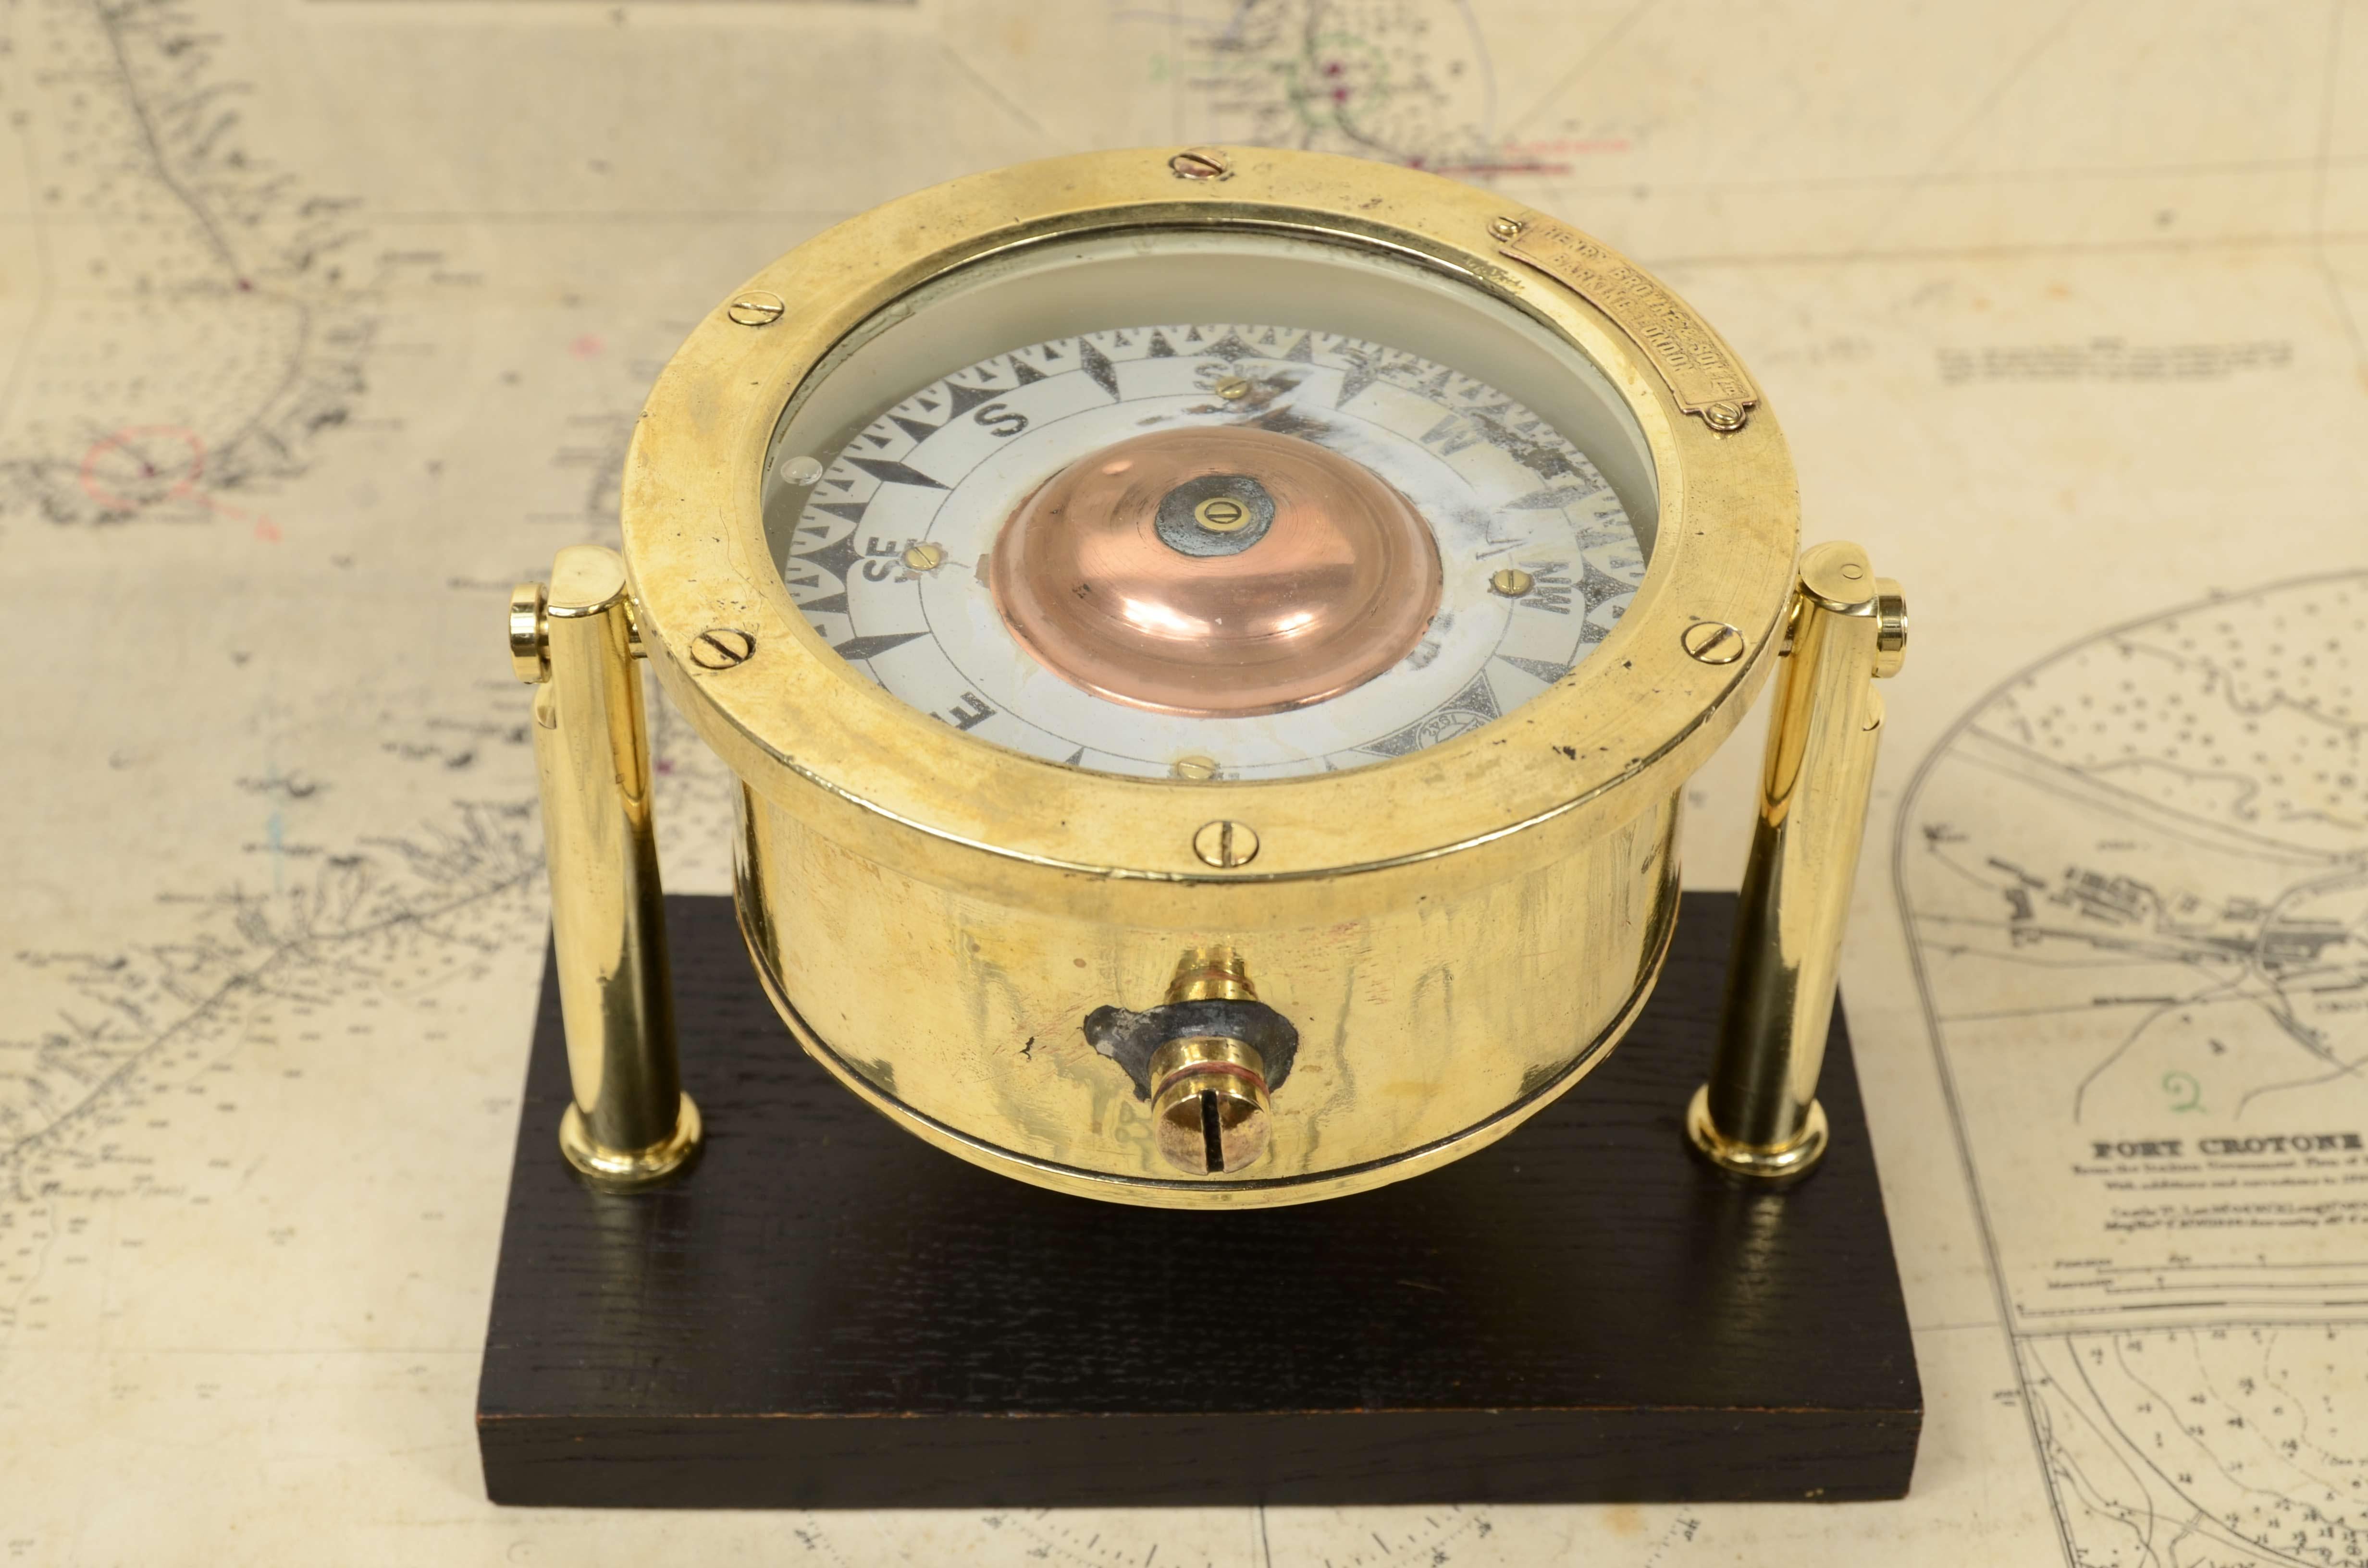 Nautischer Magnetkompass, signiert Henry Browne & Son Ltd   Sestrel  1942, Barking & London  von 1942. Gut  zustand, leichter Abrieb an der Kompassrose. Der Kompass ist auf einem ebonisierten Holzbrett montiert  und kundenspezifisches